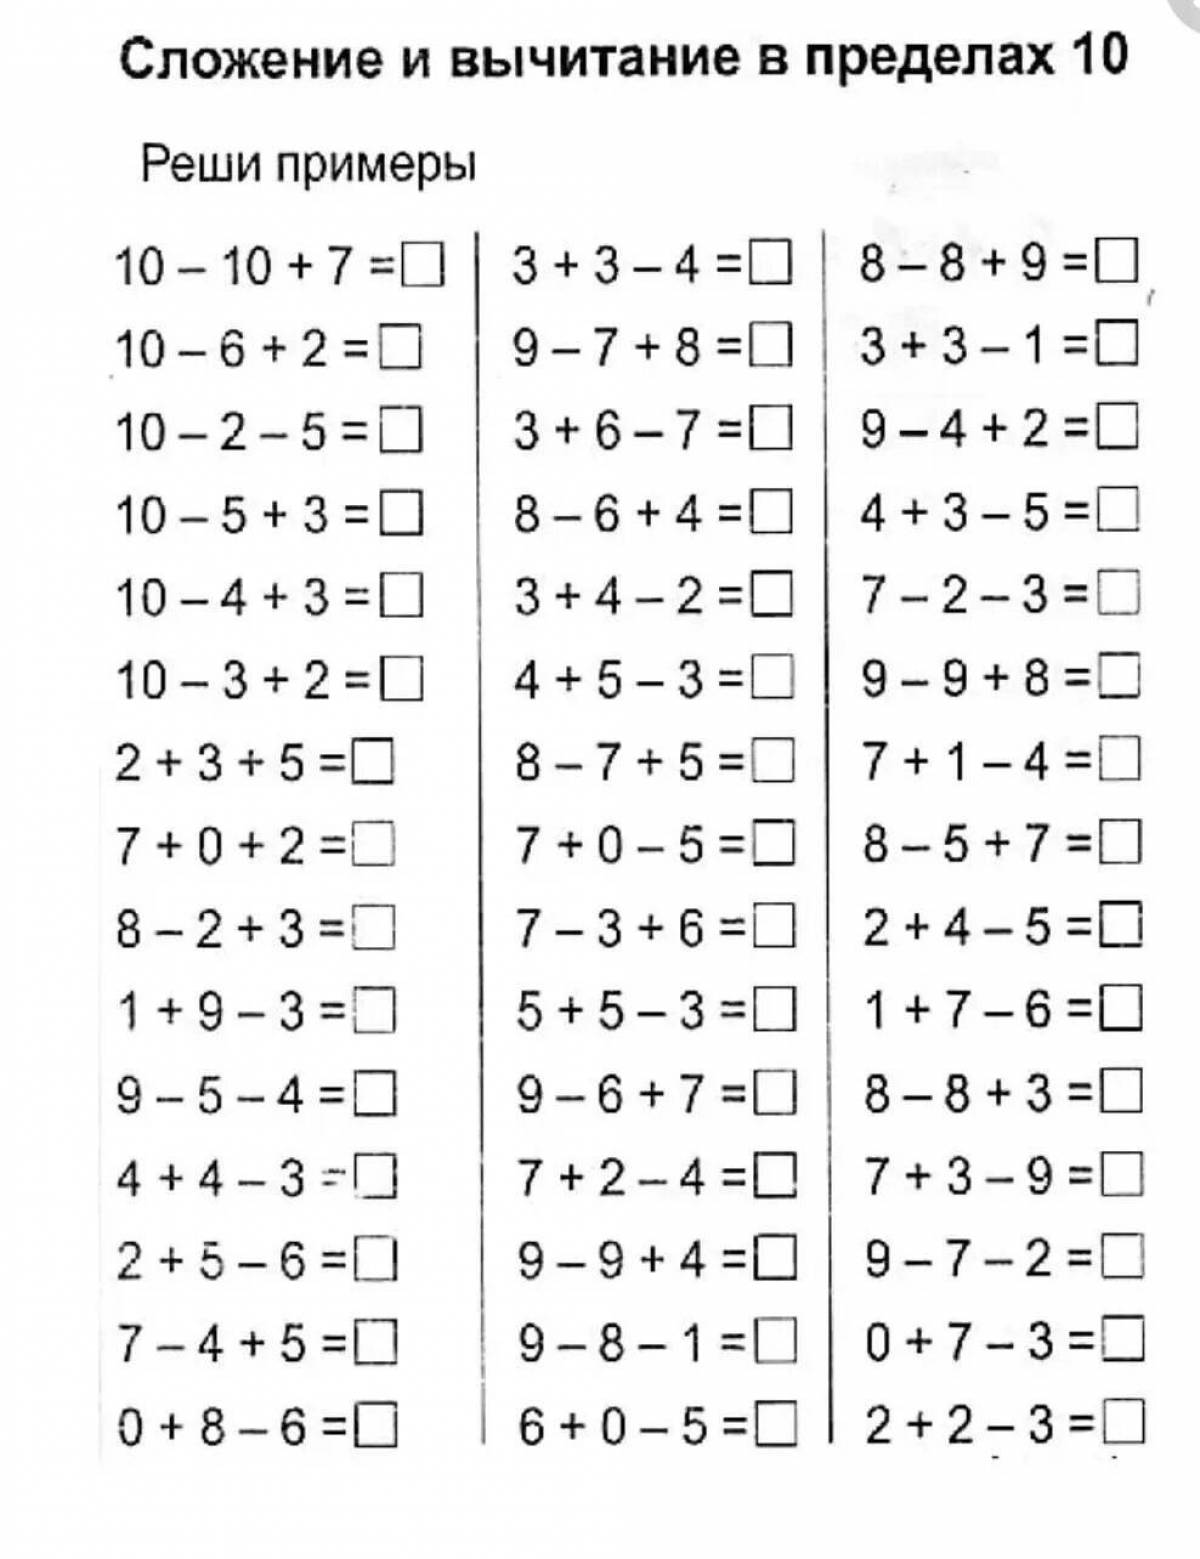 Результат в пределах 10. Тренажер по математике 1 класс счет в пределах 10. Примеры в два действия для 1 класса по математике. Карточки примеры в пределах 10 в два действия действия 1 класса. Задания по математике 1 класс в пределах 20.